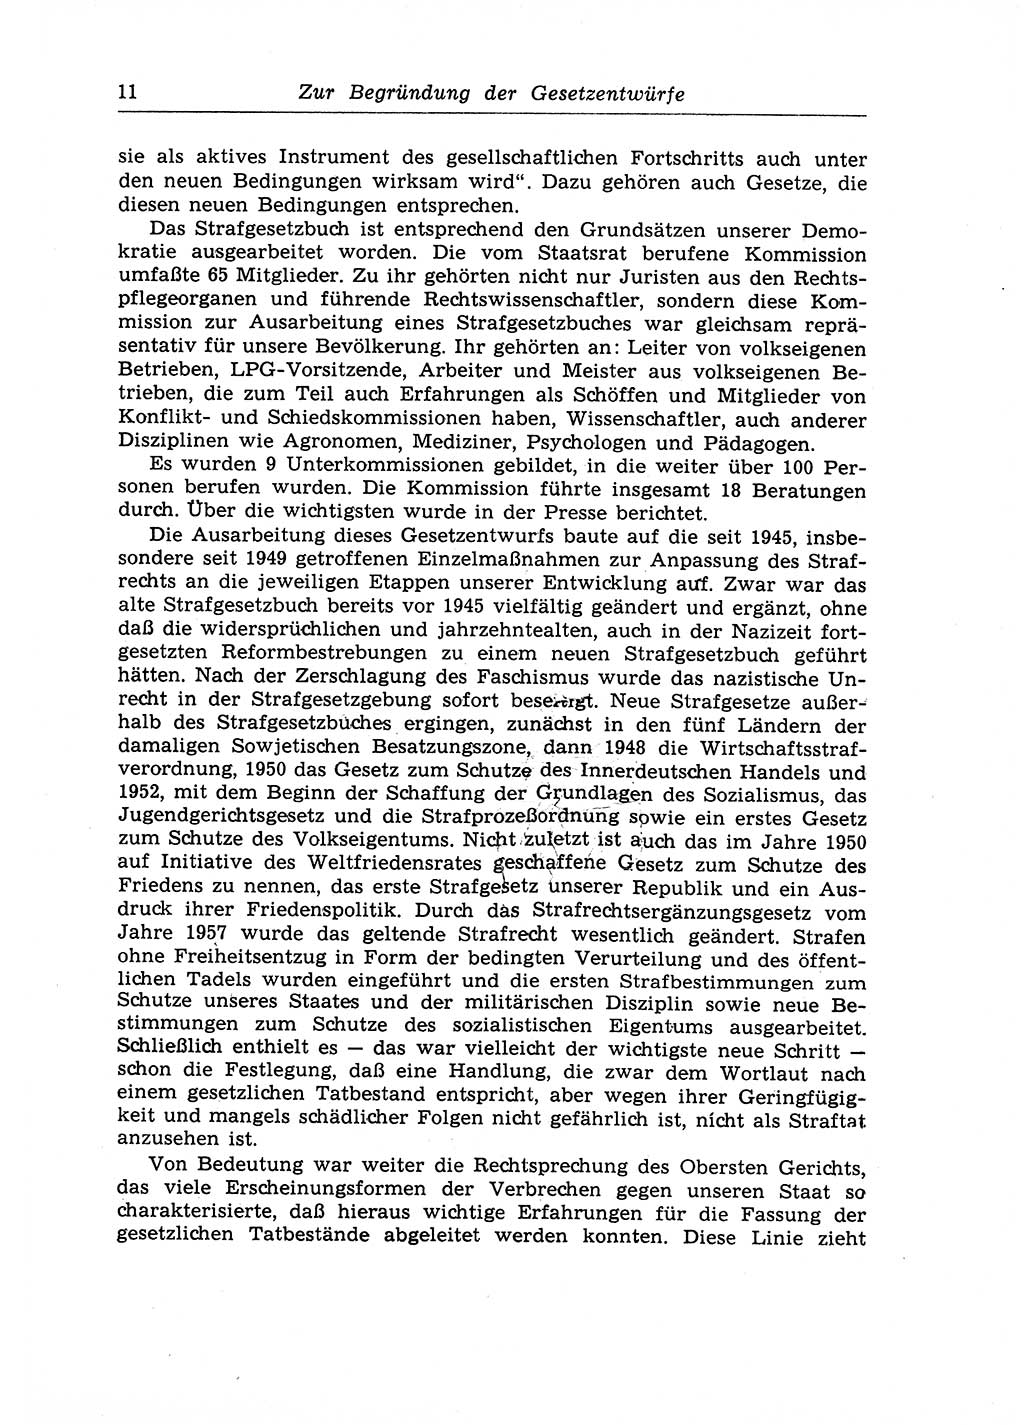 Strafrecht der Deutschen Demokratischen Republik (DDR), Lehrkommentar zum Strafgesetzbuch (StGB), Allgemeiner Teil 1970, Seite 11 (Strafr. DDR Lehrkomm. StGB AT 1970, S. 11)